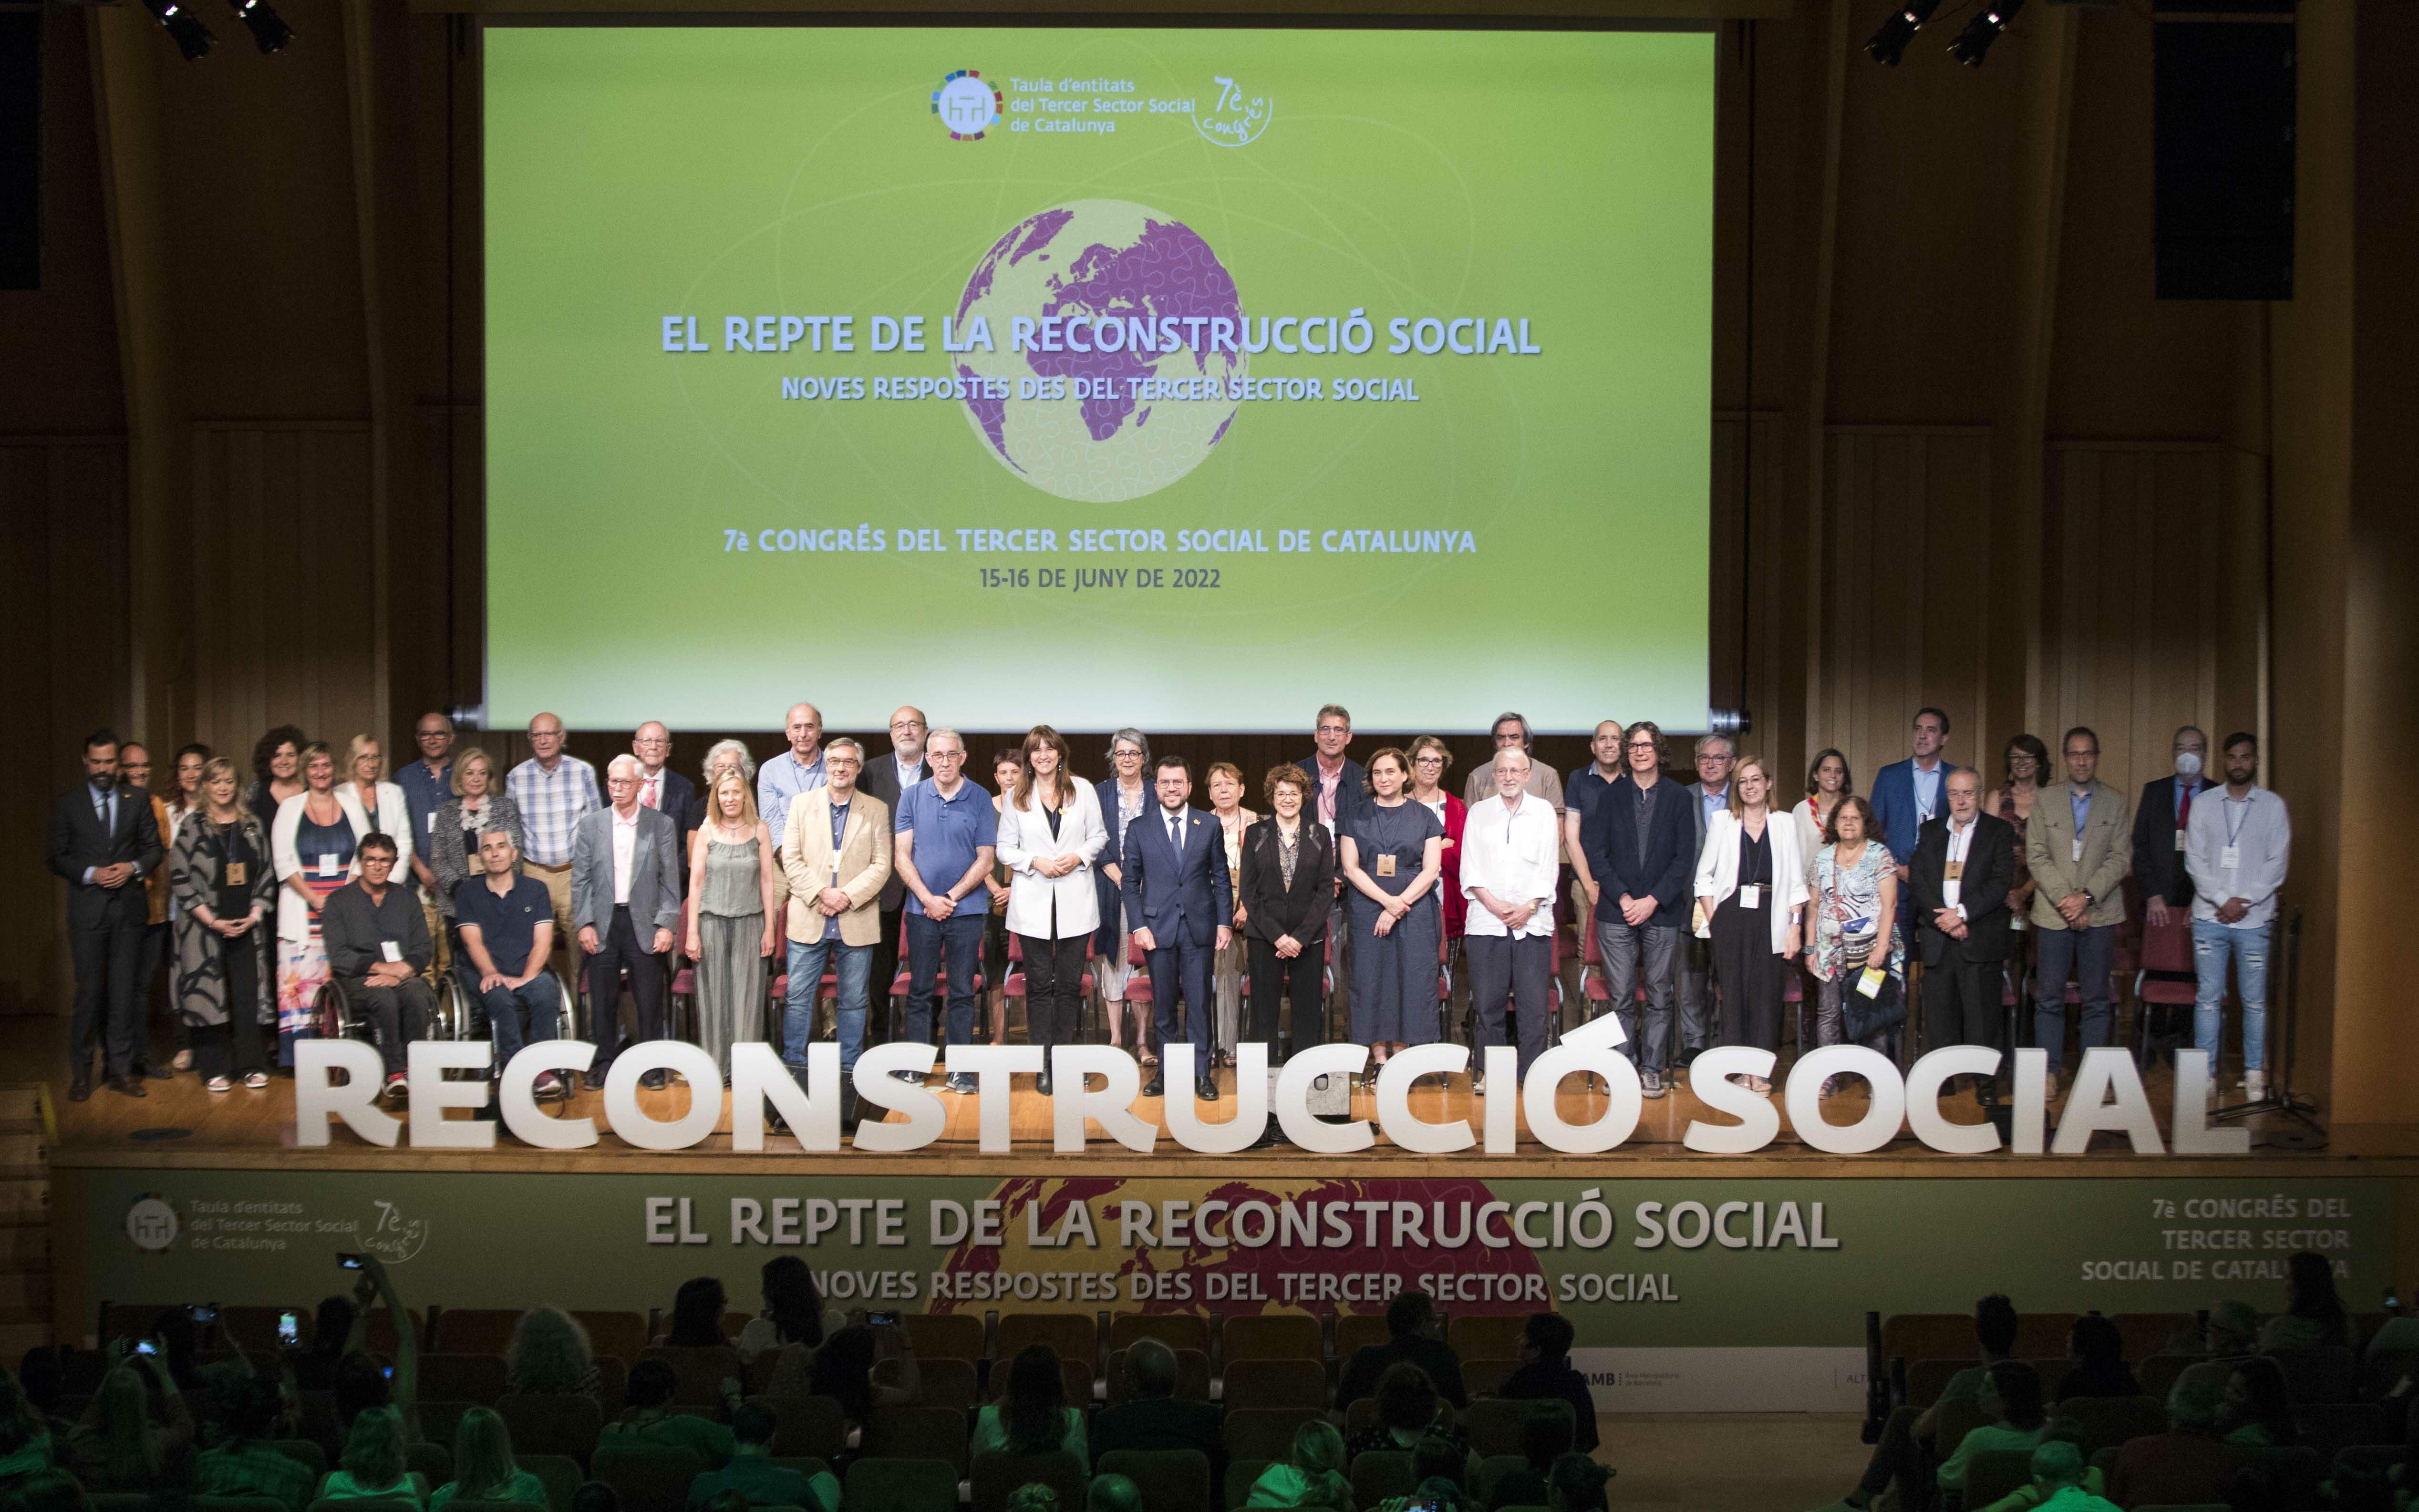 Imatge fotografia de família del 7è Congrés del Tercer Sector Social